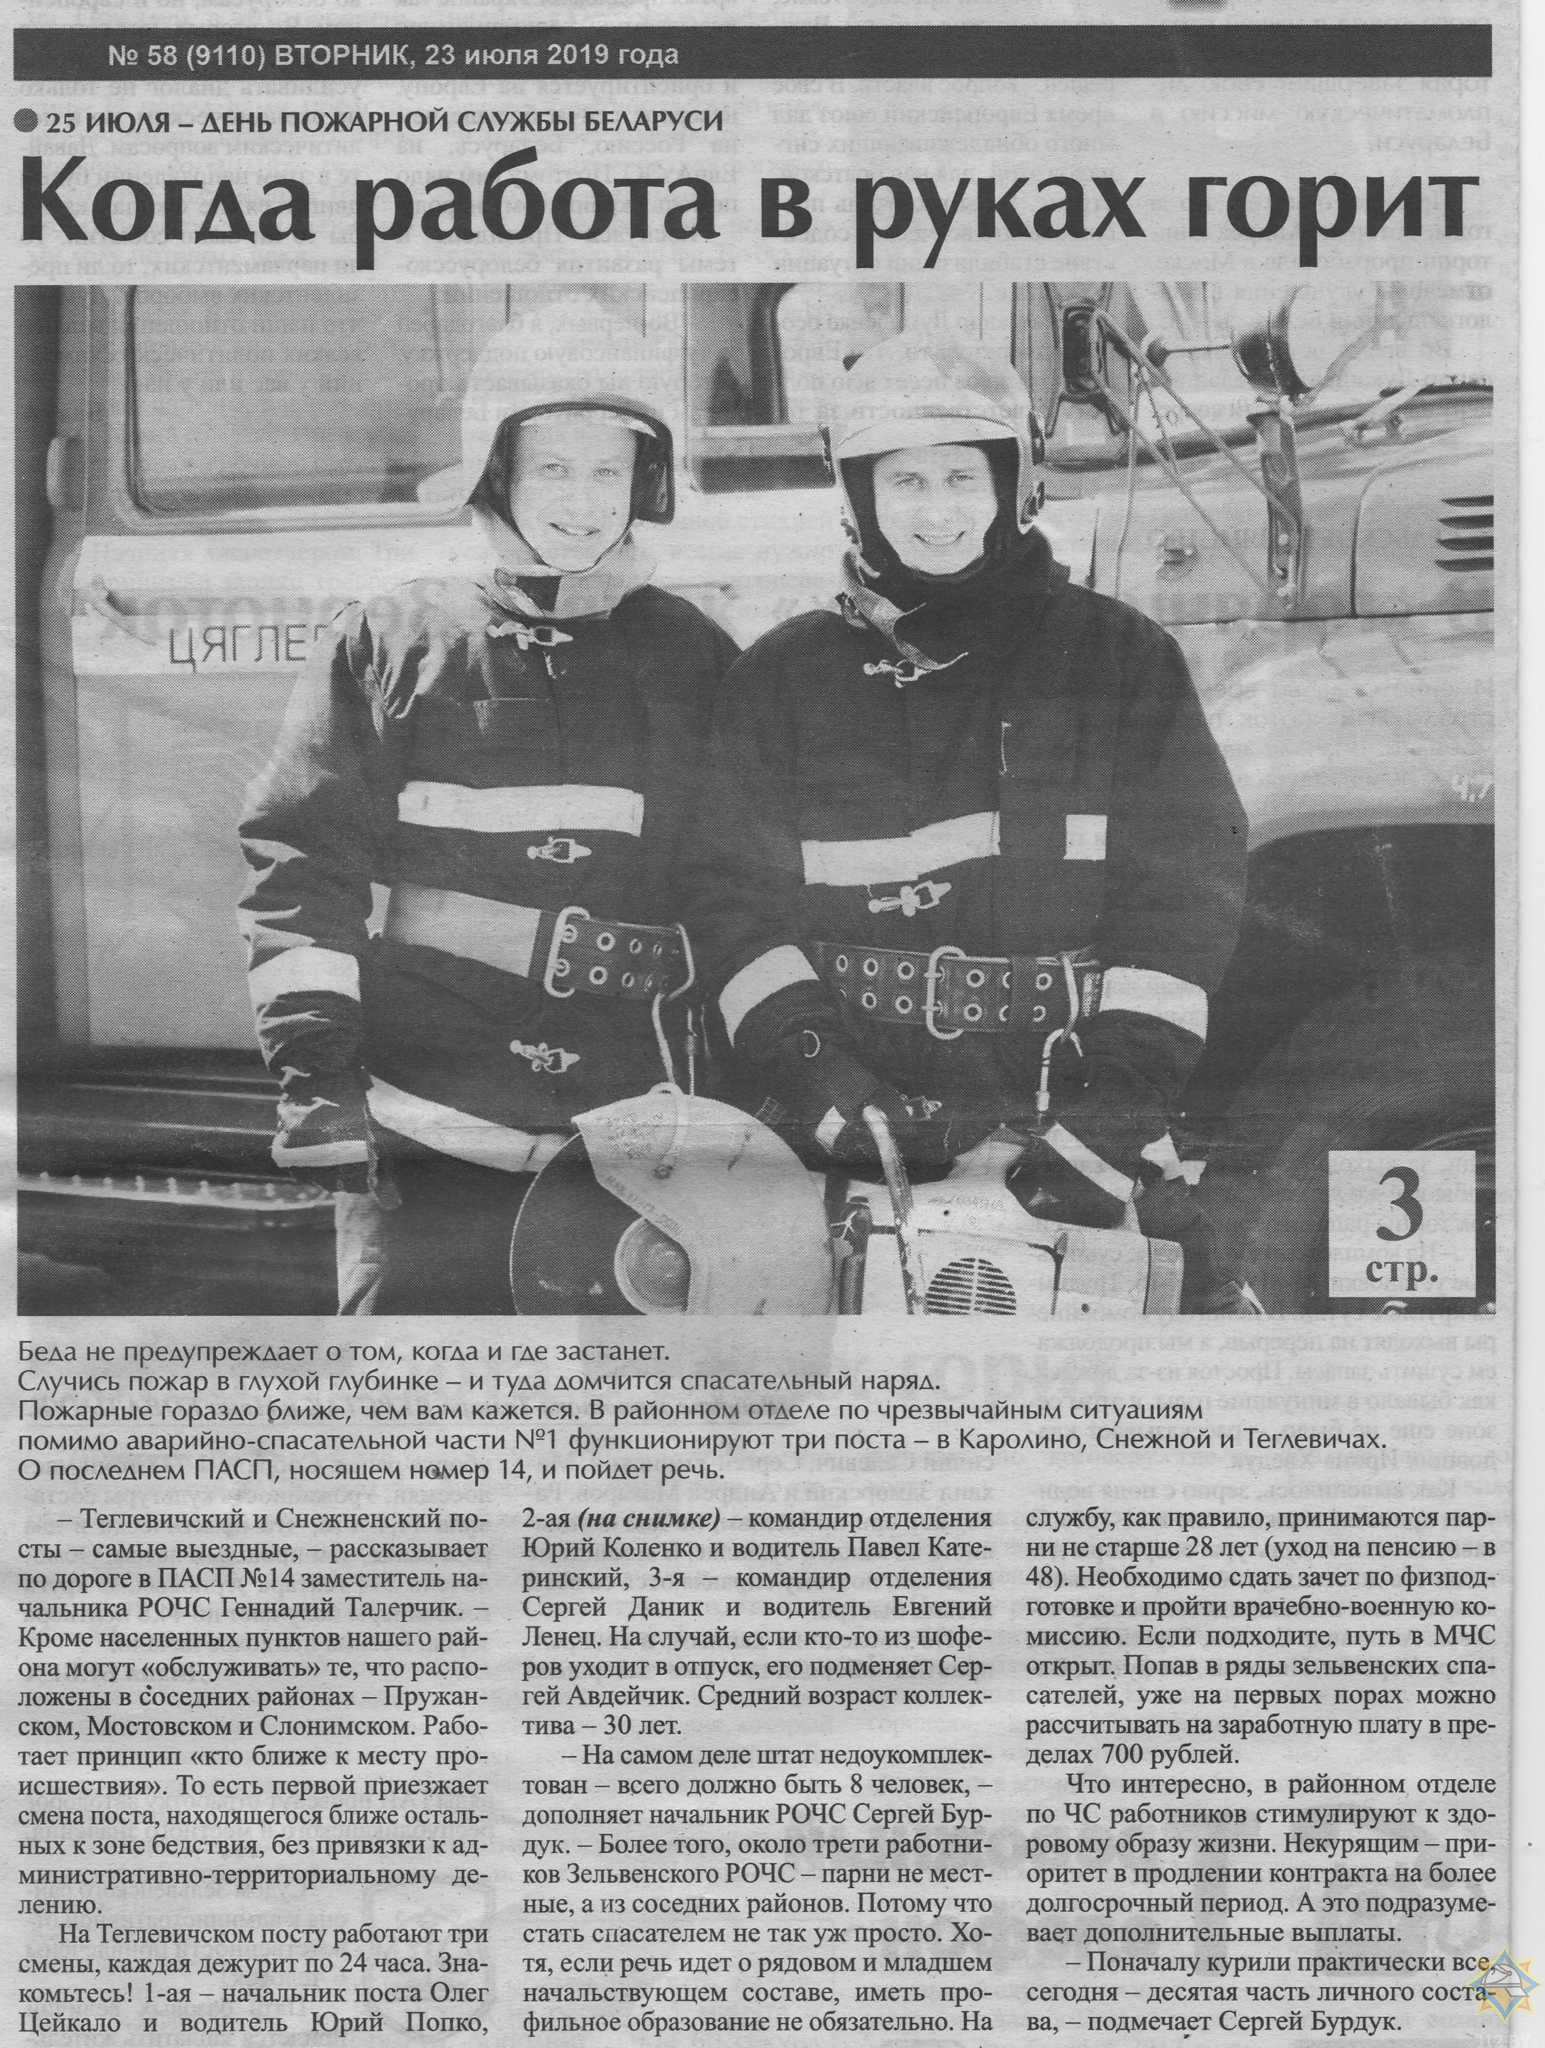 Газета «Праца» 23.07.2019 рубрика «25 июля – день пожарной службы Беларуси»  статья «Когда работ в руках горит»